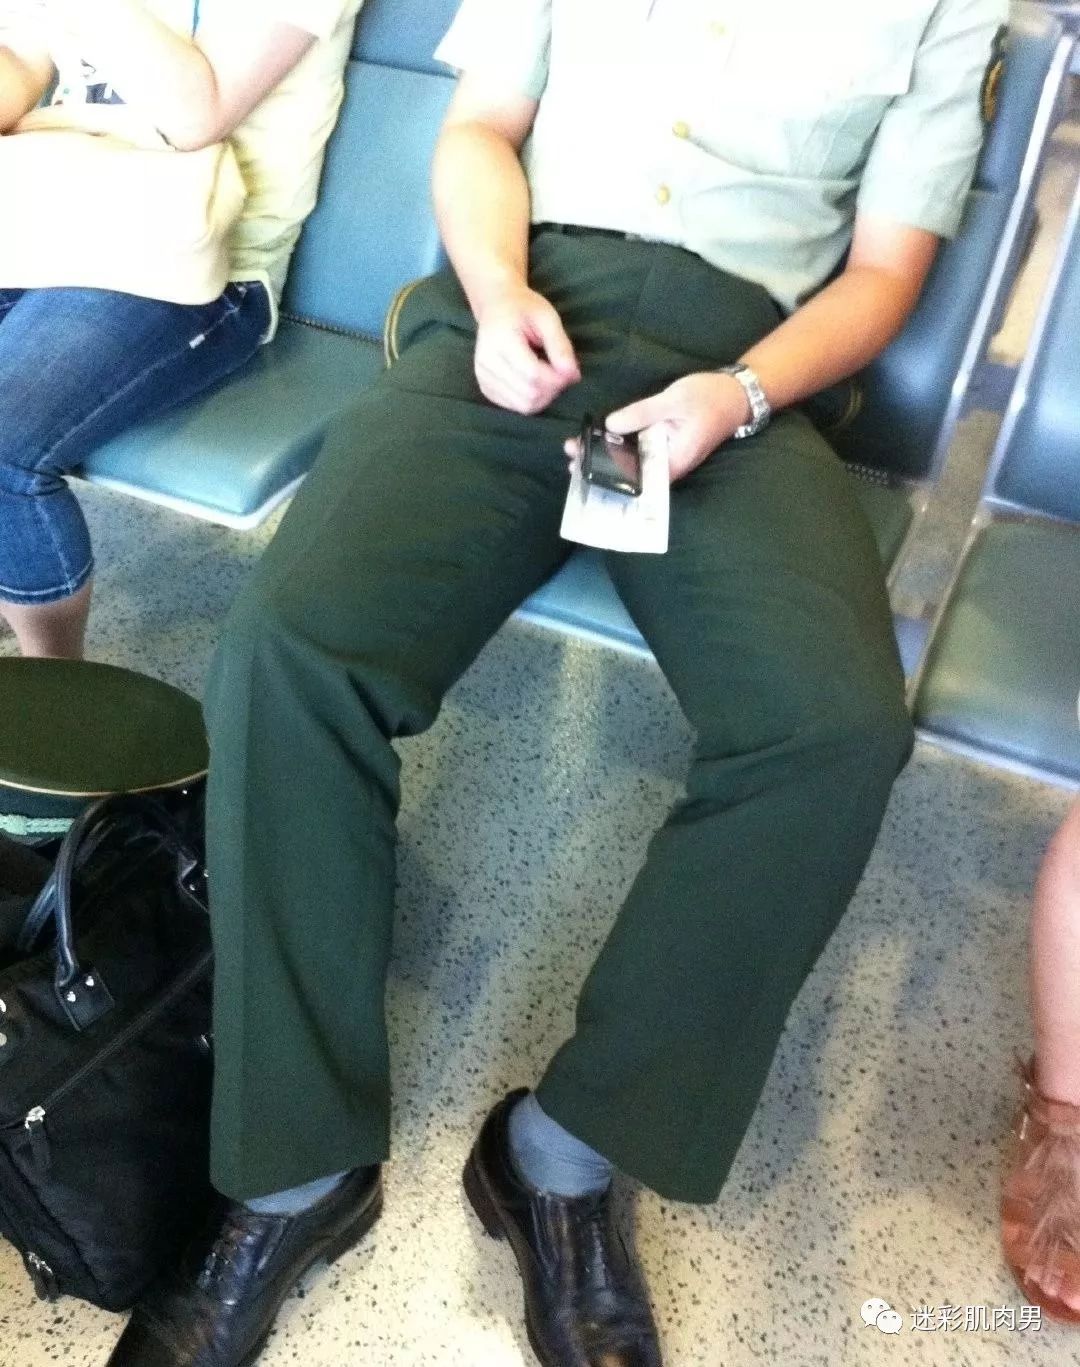 车站捕获熟睡帅兵哥想和他坐一起,这裤子太紧了